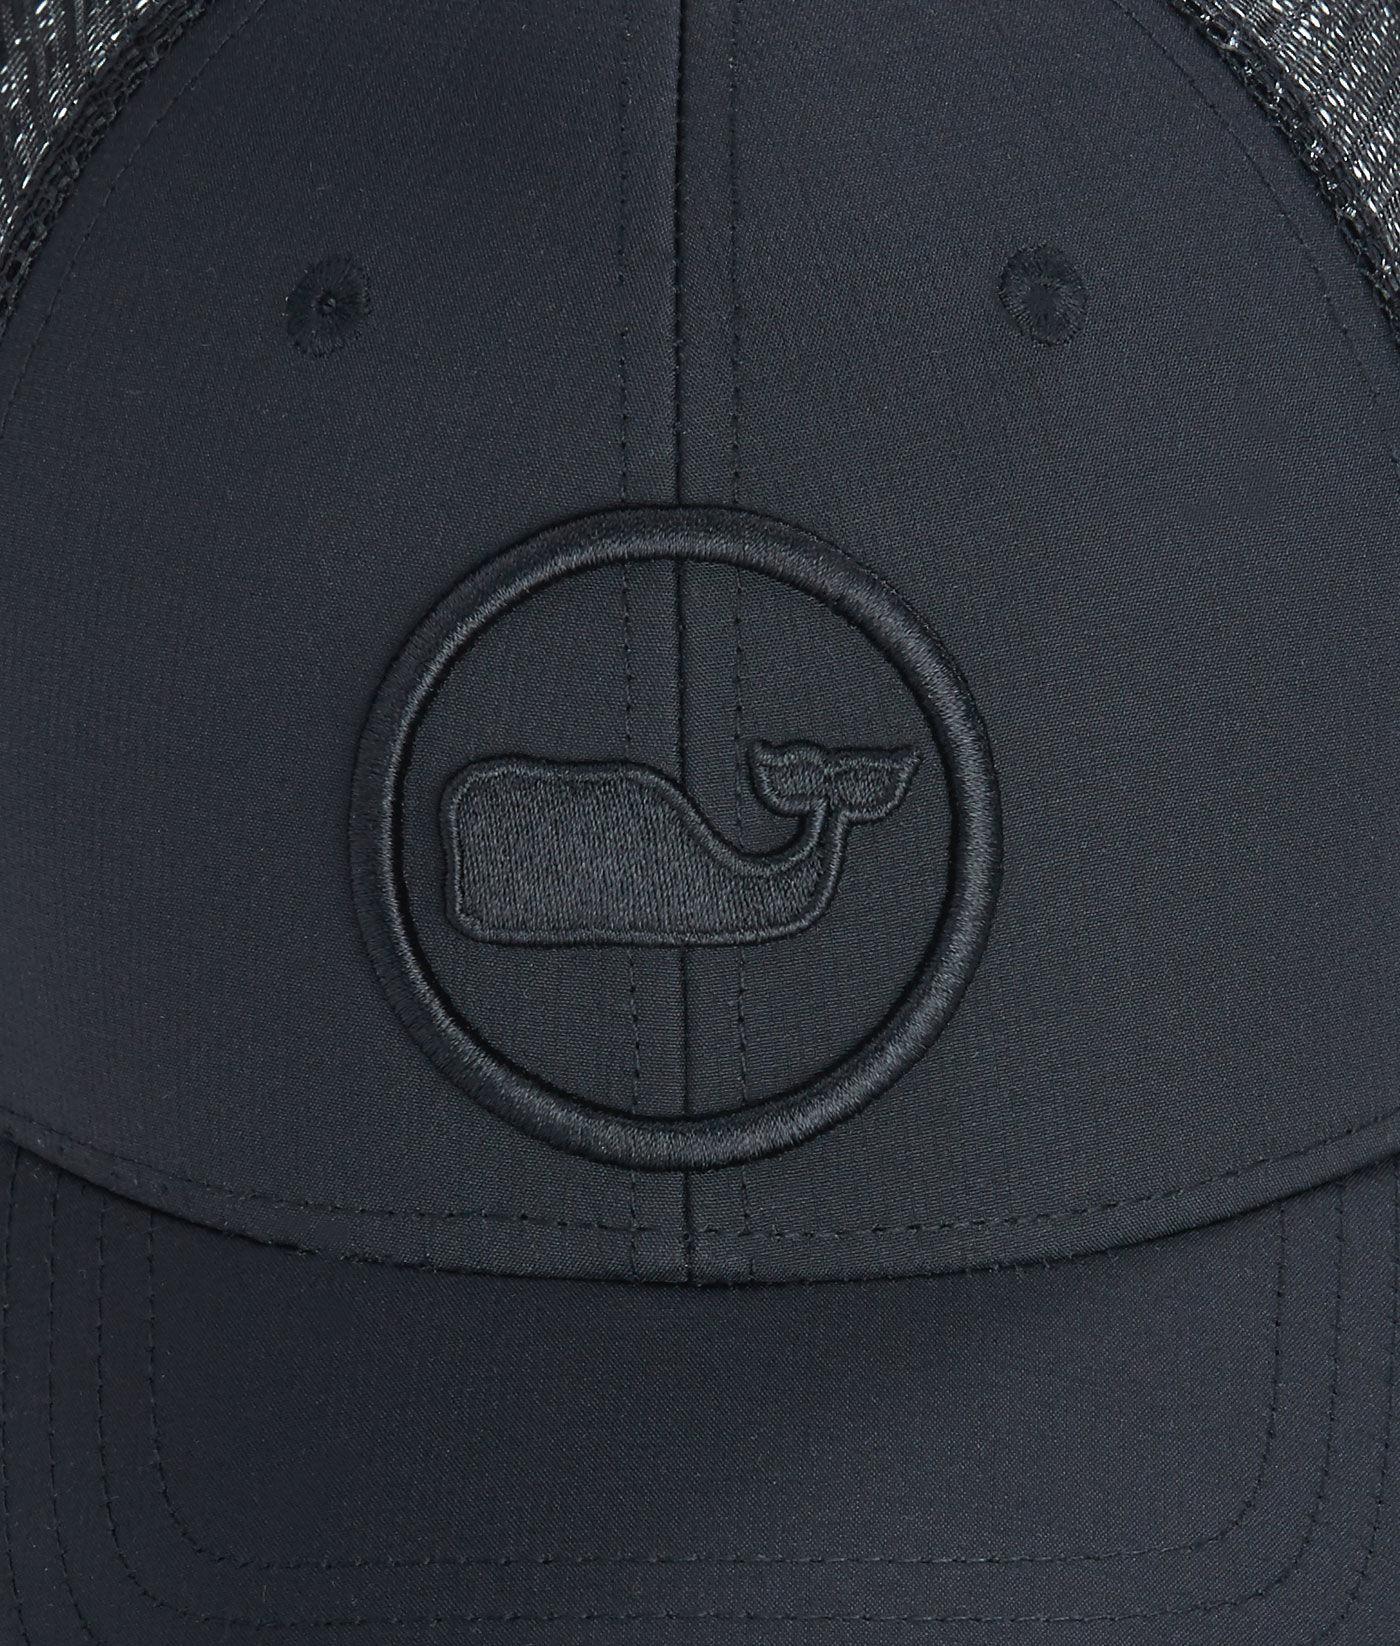 Black Whale Logo - Lyst - Vineyard Vines Whale Dot Performance Trucker Hat in Black for Men